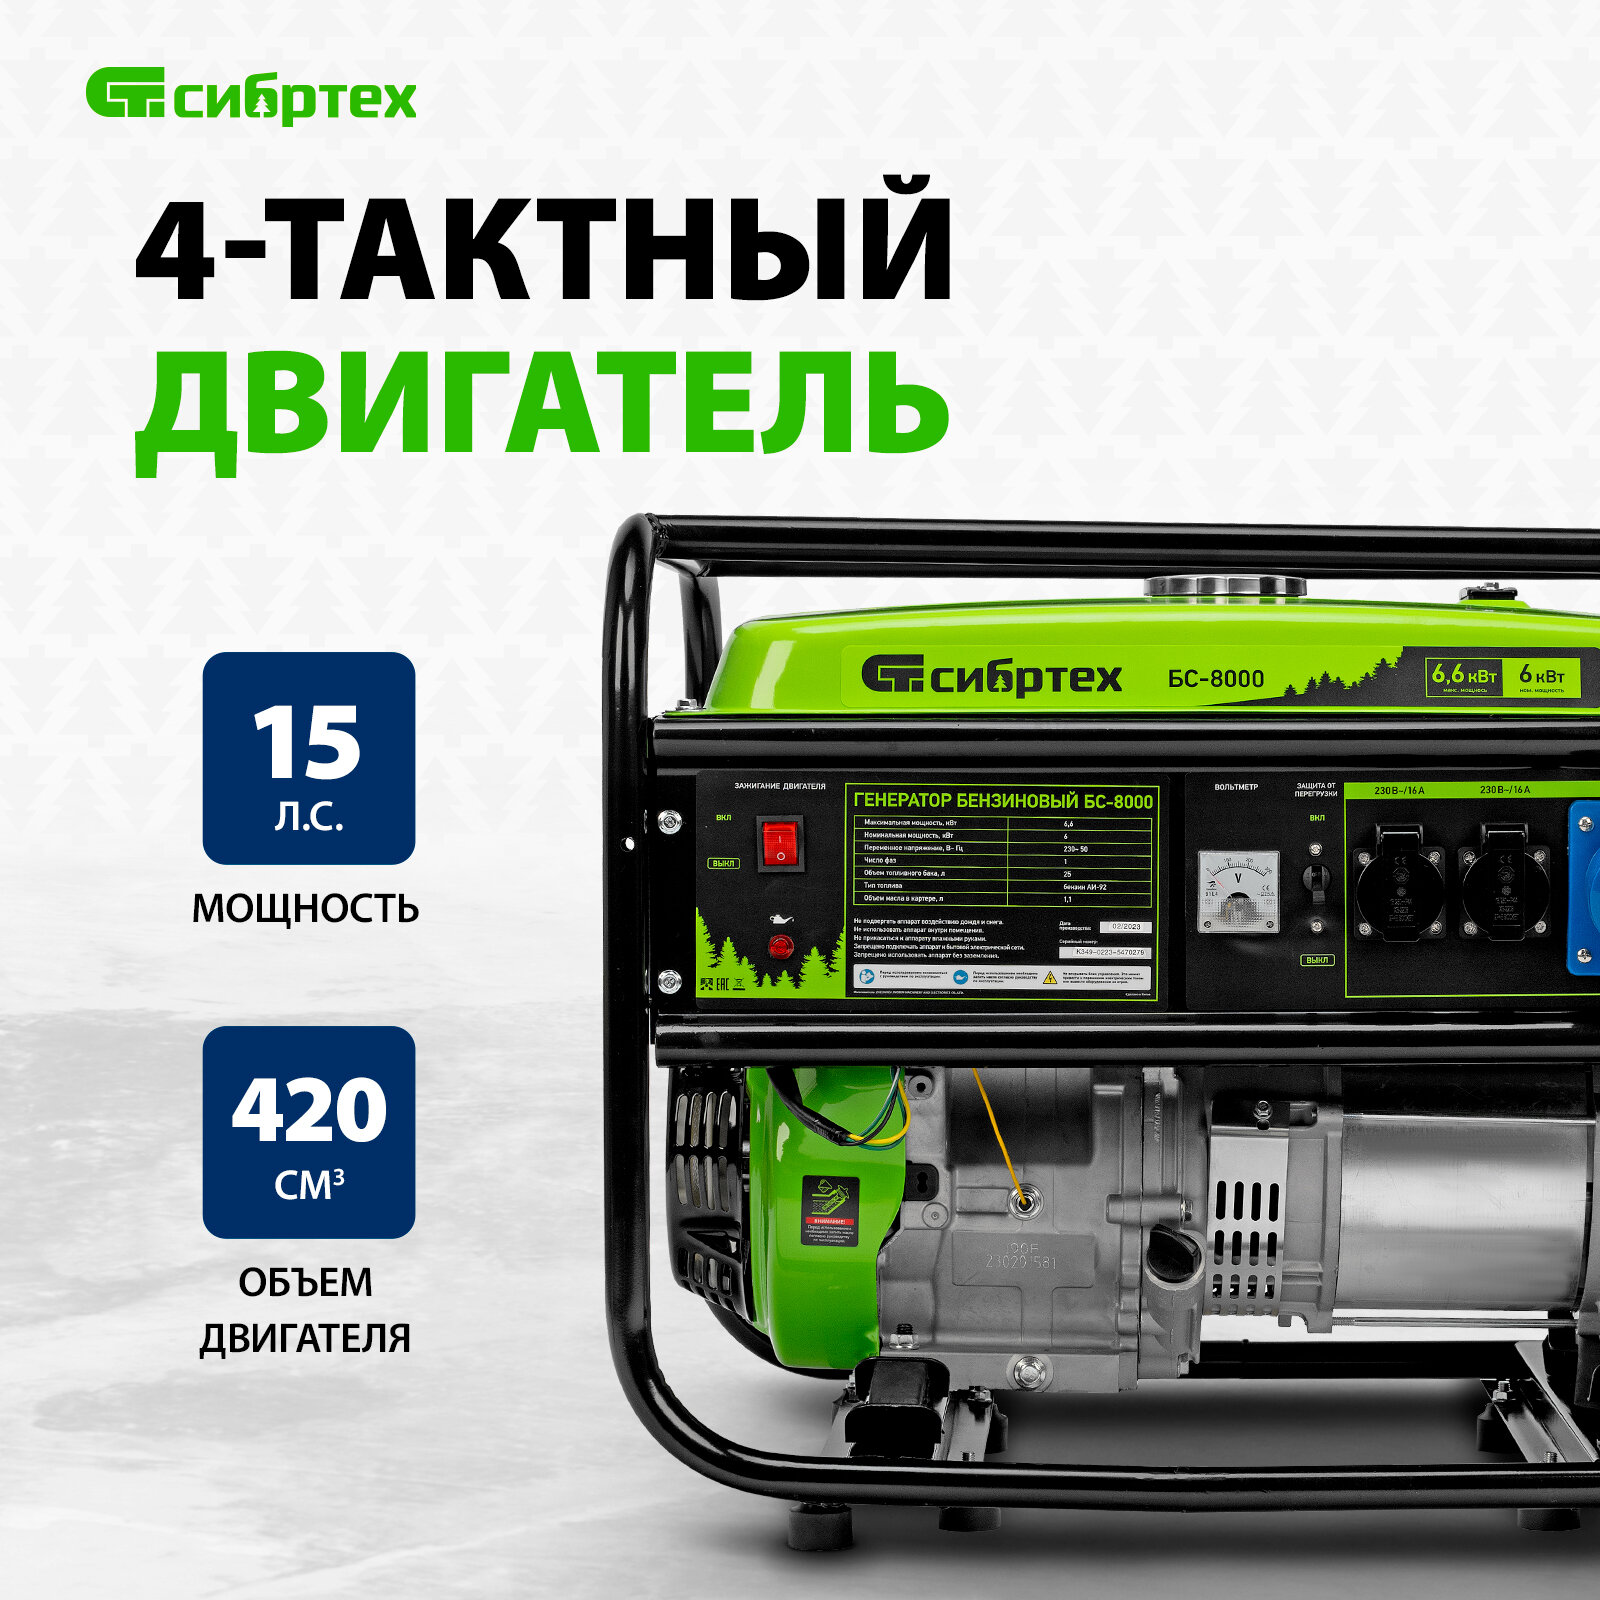 Генератор бензиновый БС-8000, 6,6 кВт, 230В, четырехтактный, 25 л, ручной стартер Сибртех Сибртех